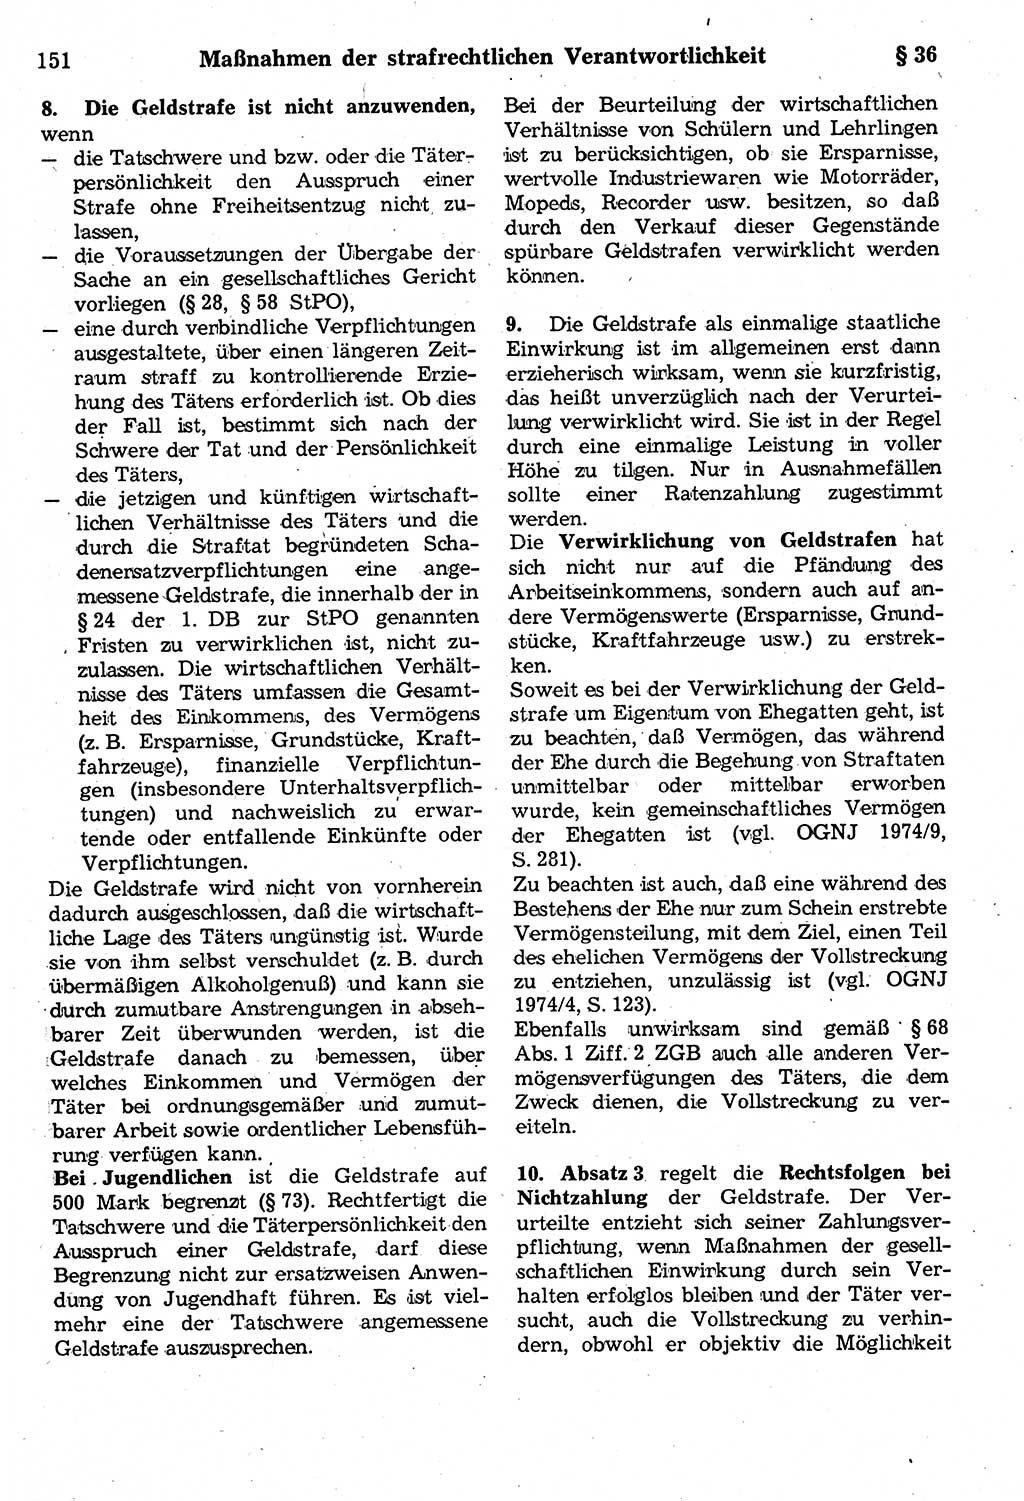 Strafrecht der Deutschen Demokratischen Republik (DDR), Kommentar zum Strafgesetzbuch (StGB) 1987, Seite 151 (Strafr. DDR Komm. StGB 1987, S. 151)